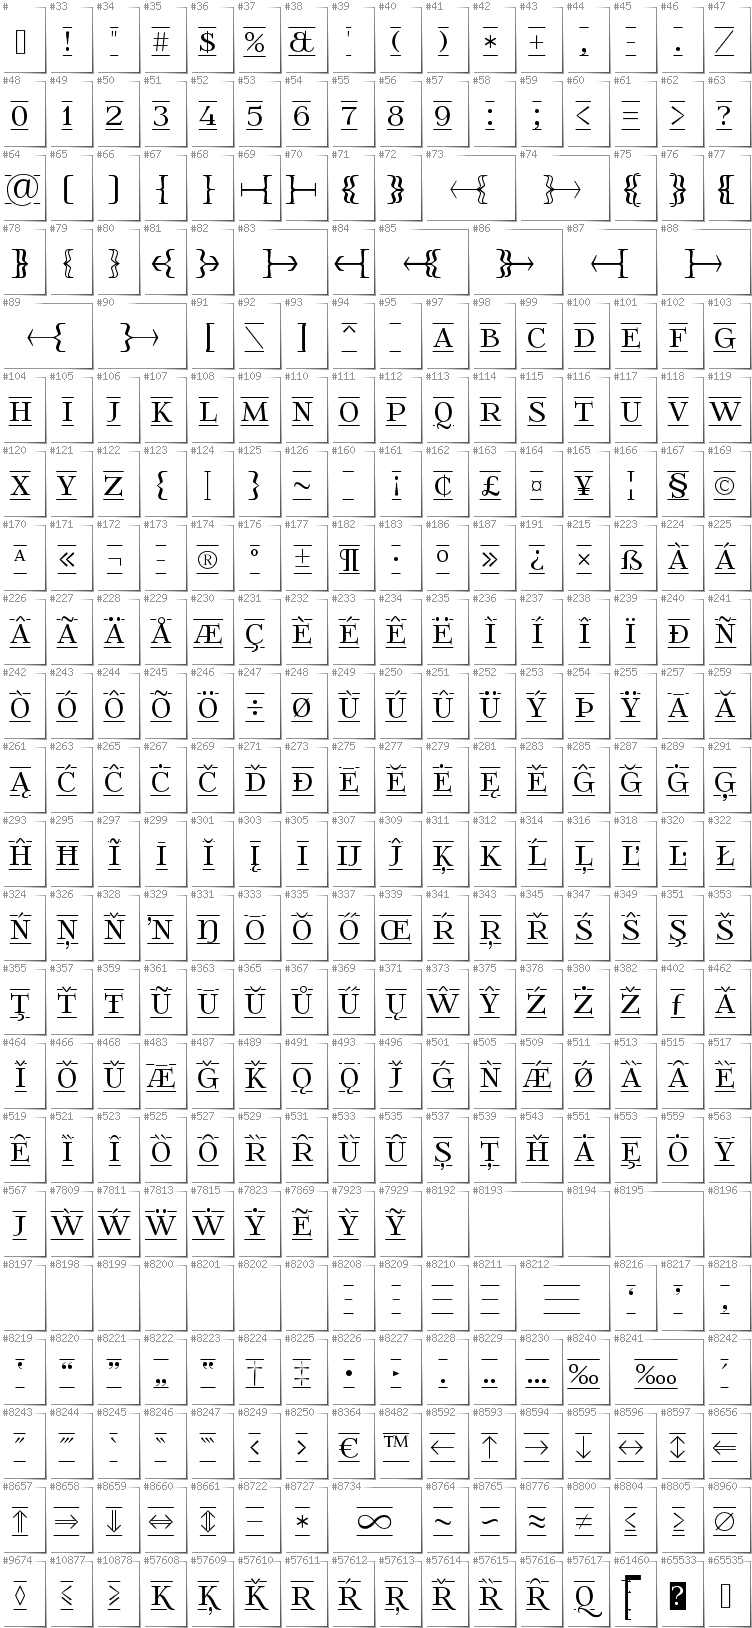 All glyphs in font FoglihtenFr01